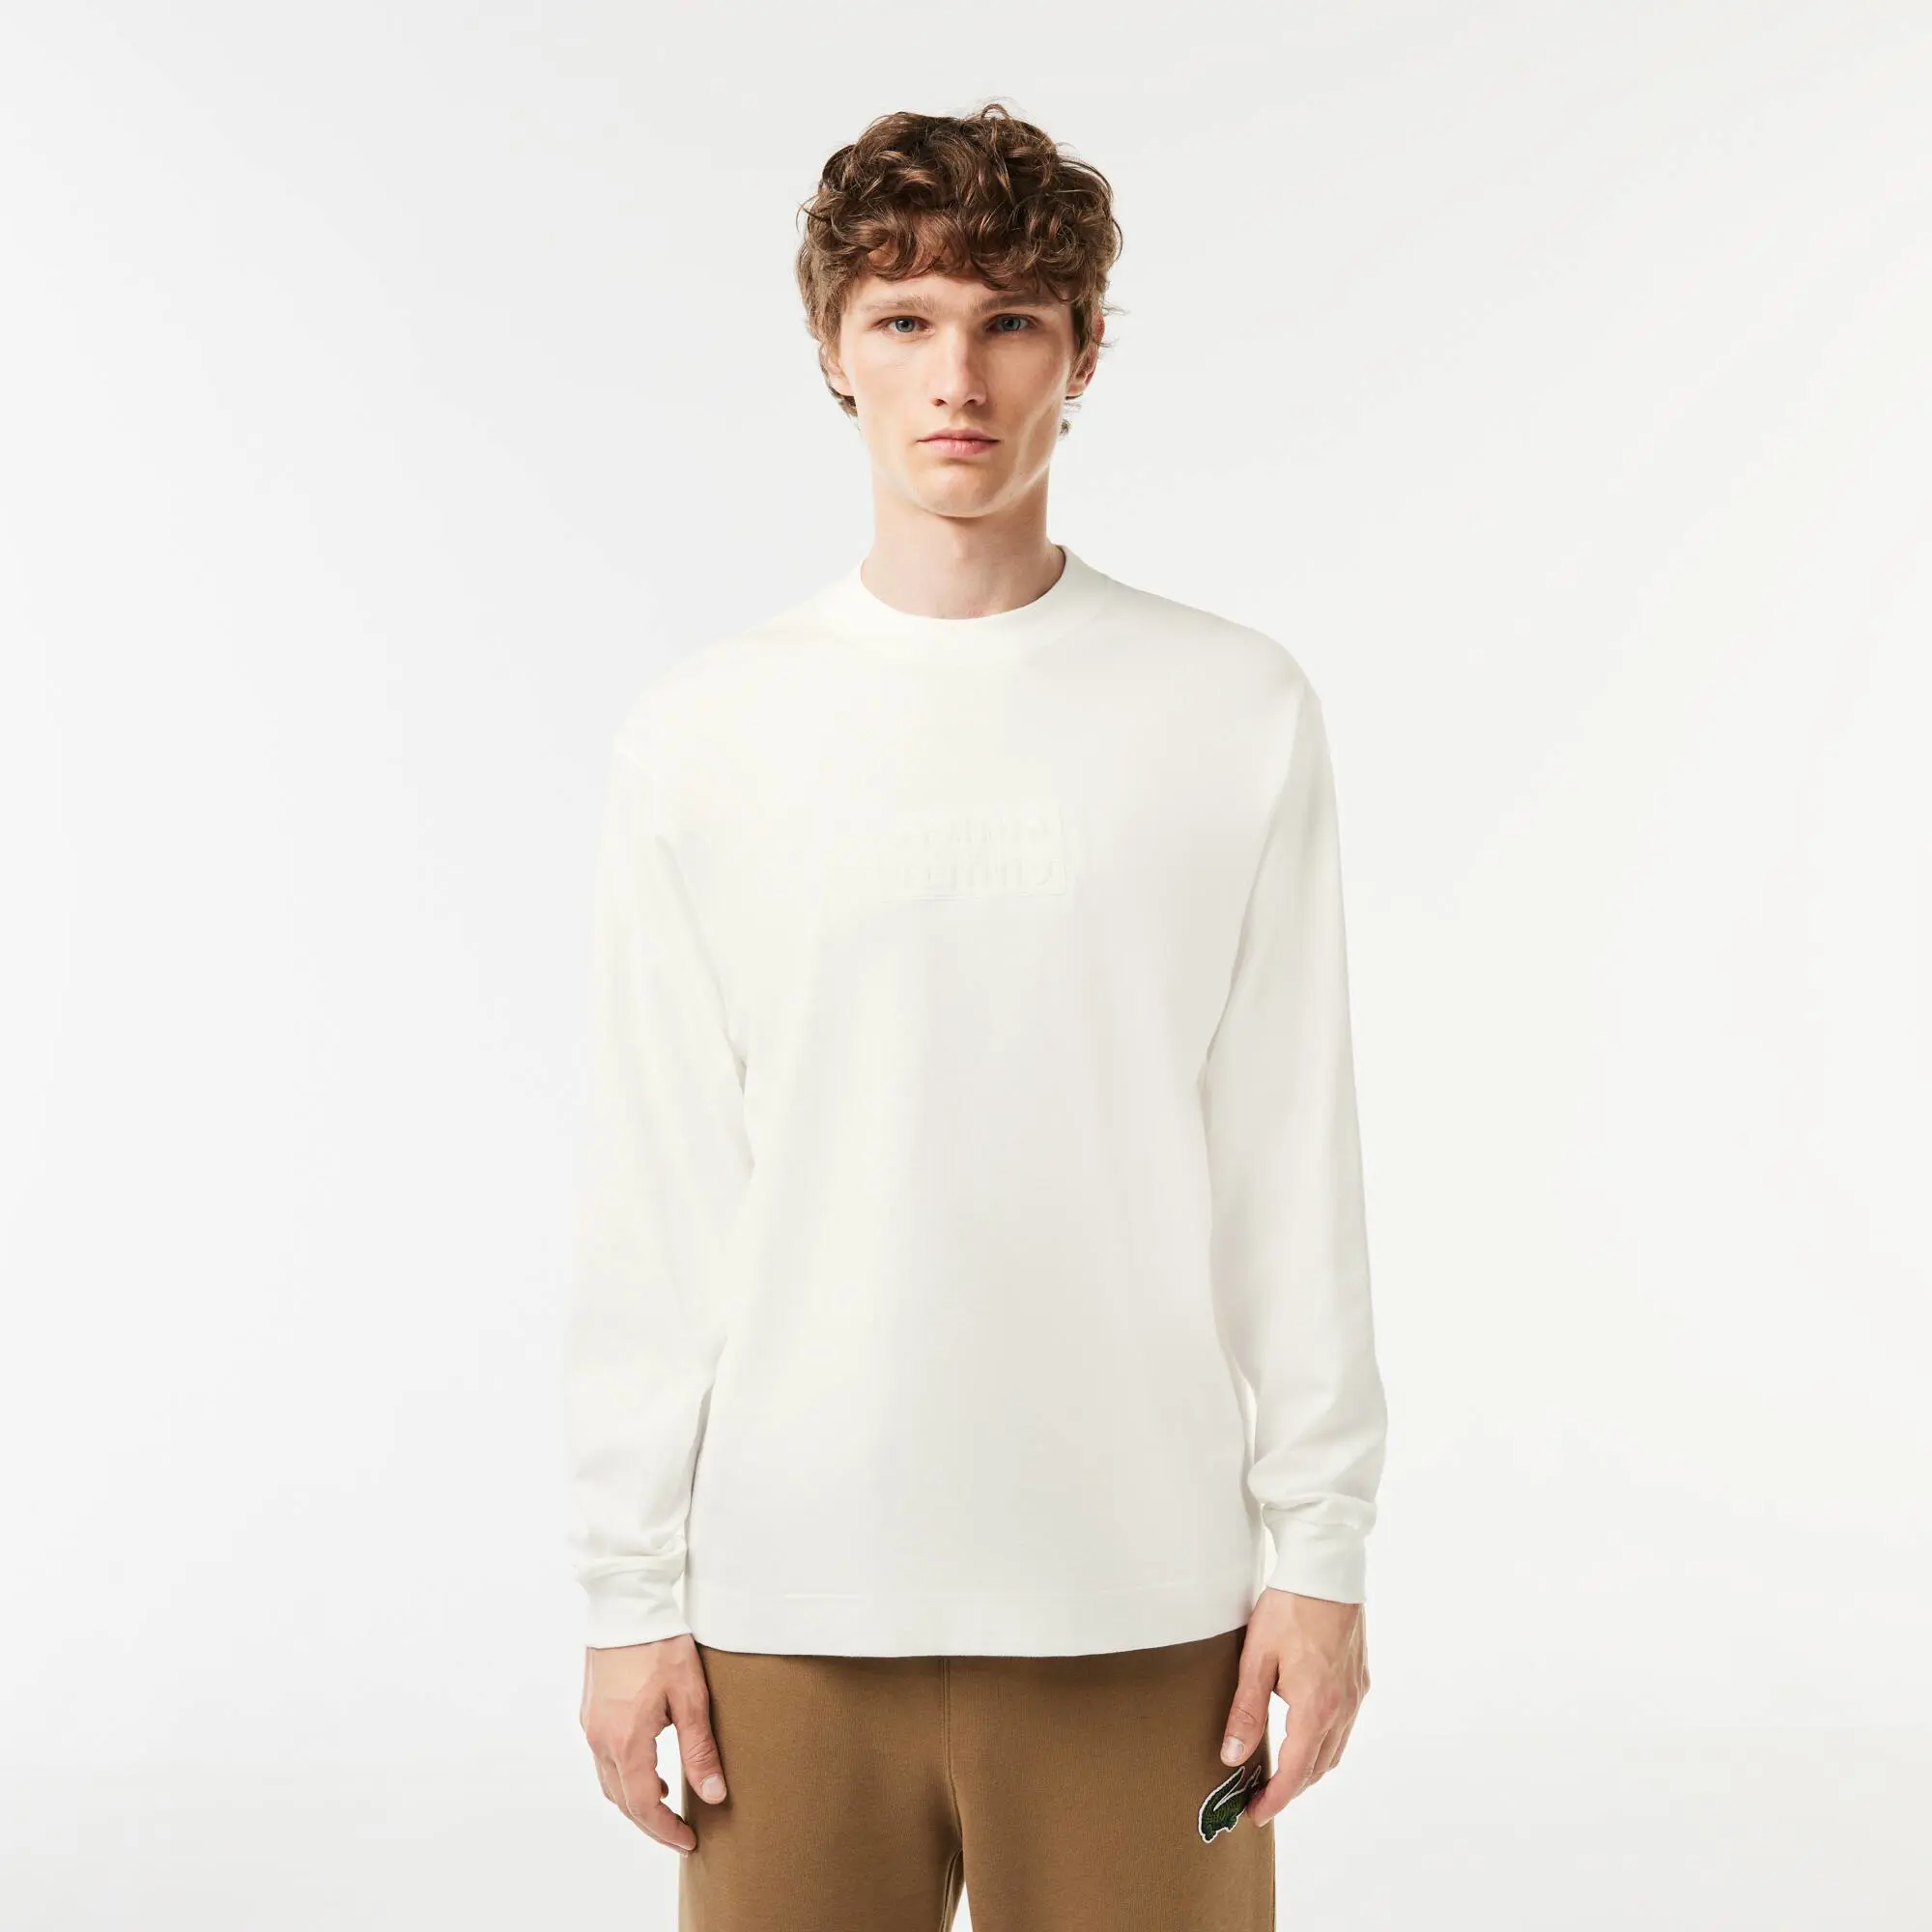 Lacoste Men's Long Sleeve Loose Fit Cotton T-Shirt. 1